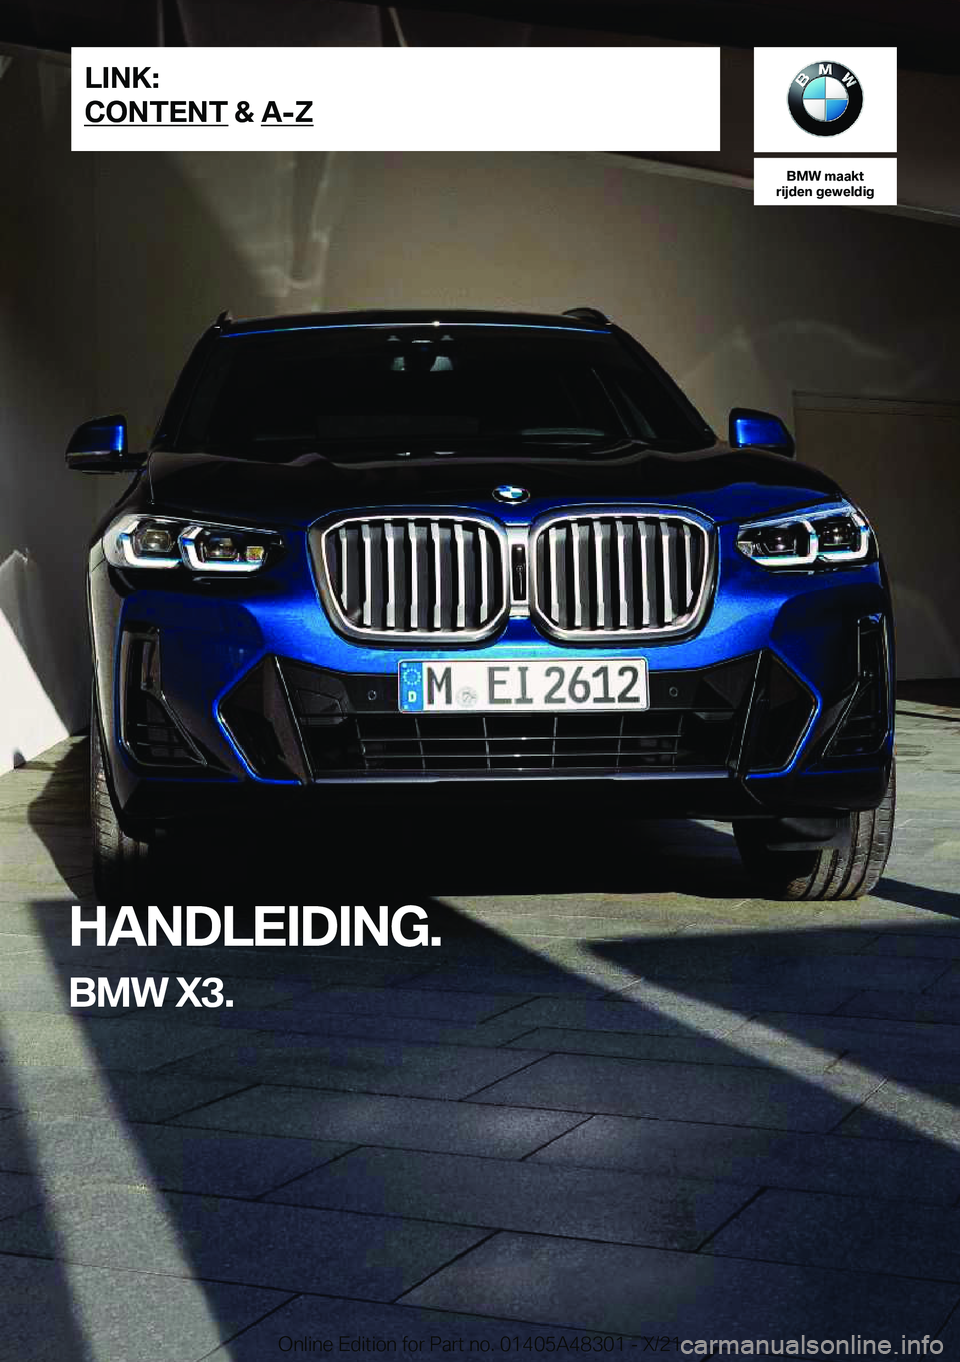 BMW X3 2022  Instructieboekjes (in Dutch) �B�M�W��m�a�a�k�t
�r�i�j�d�e�n��g�e�w�e�l�d�i�g
�H�A�N�D�L�E�I�D�I�N�G�.
�B�M�W��X�3�.�L�I�N�K�:
�C�O�N�T�E�N�T��&��A�-�Z�O�n�l�i�n�e��E�d�i�t�i�o�n��f�o�r��P�a�r�t��n�o�.��0�1�4�0�5�A�4�8�3